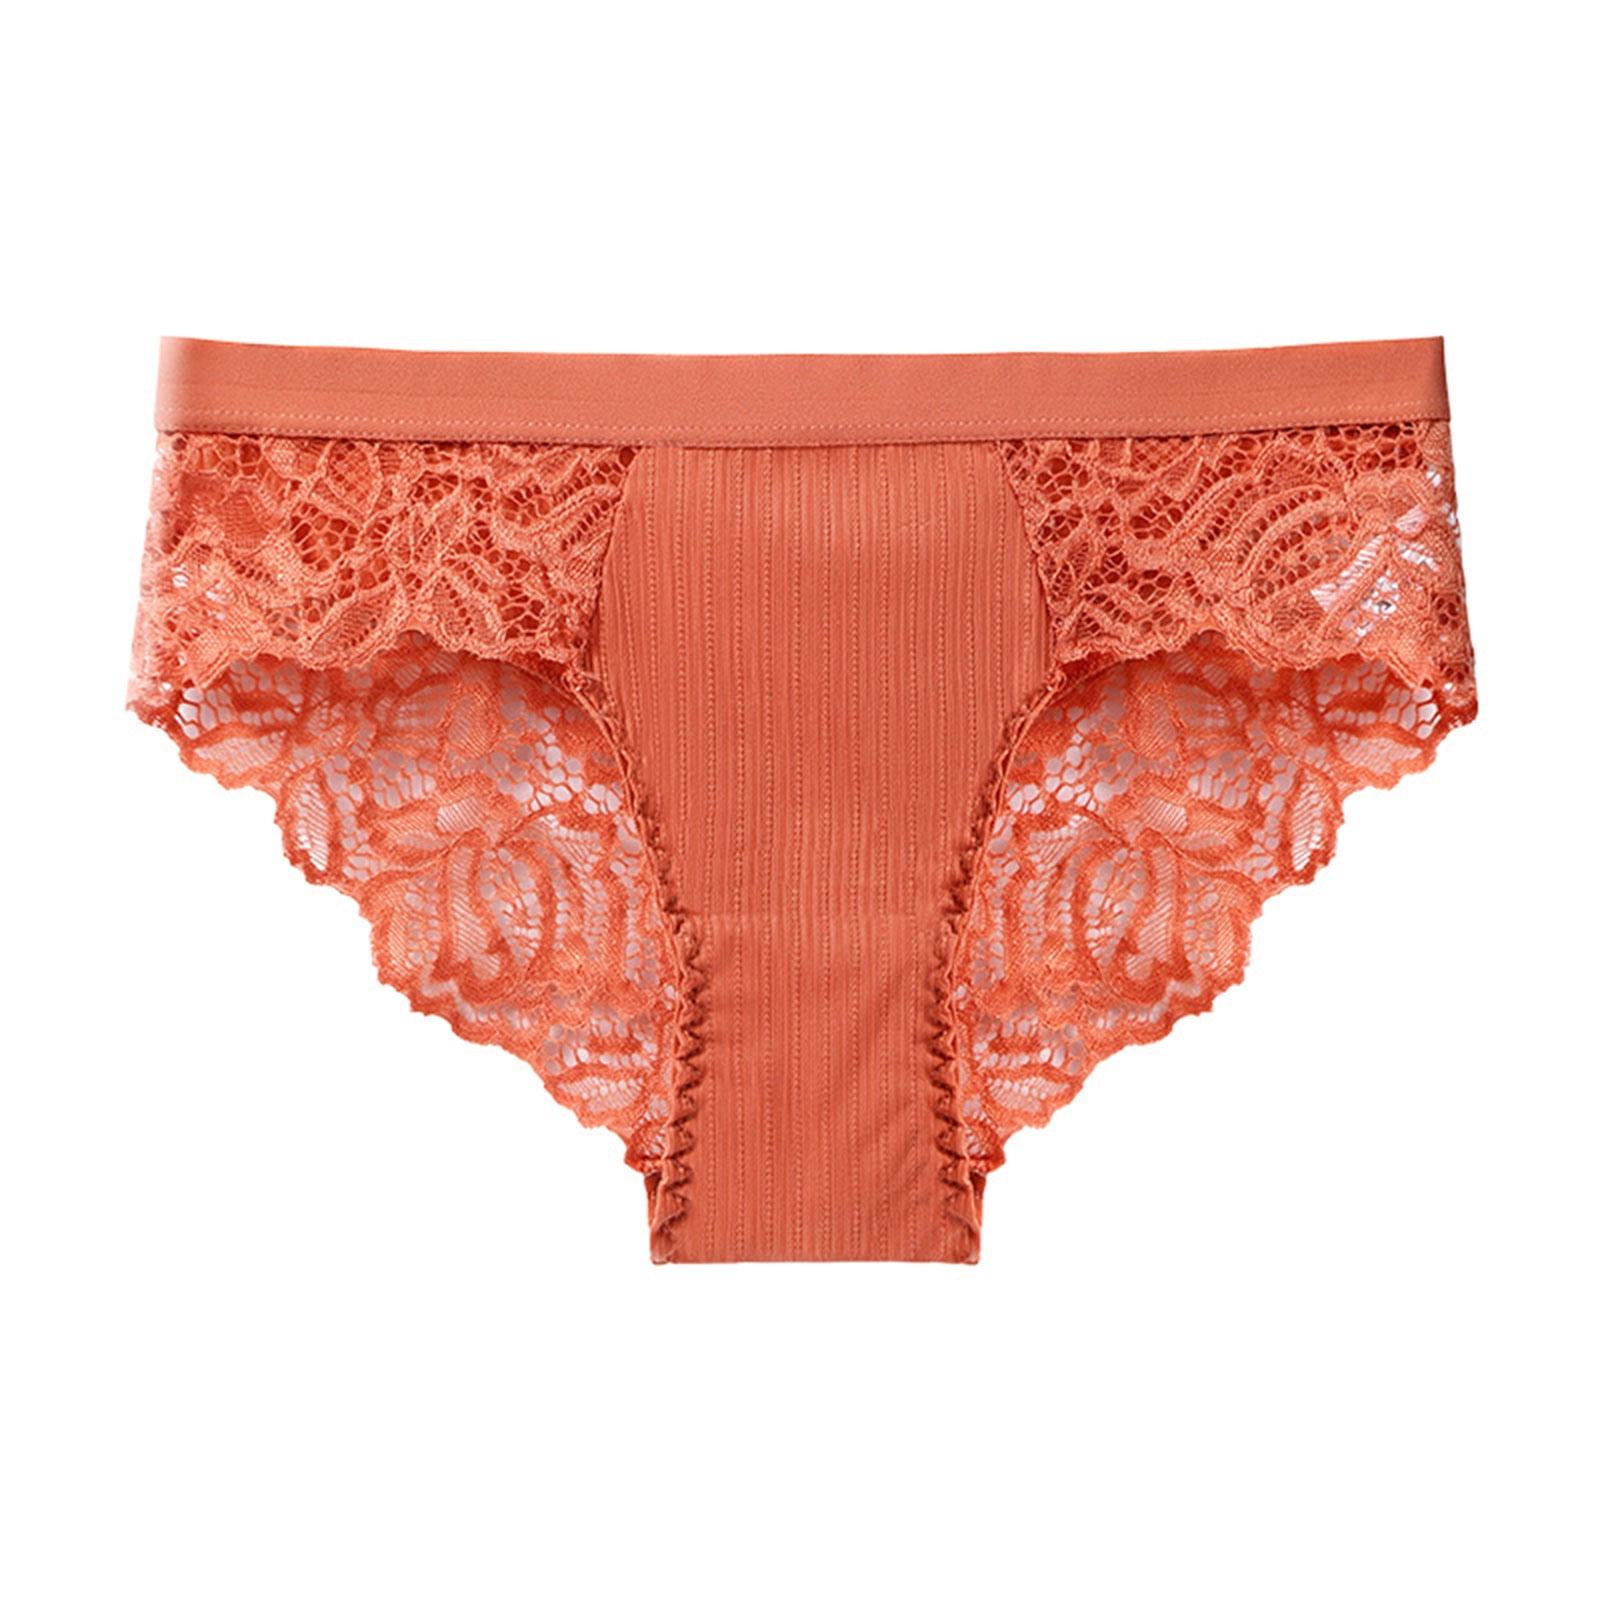 Shiusina Women's Underpants Open Crotch Panties Low Waist Lace Briefs  Underwear Orange M